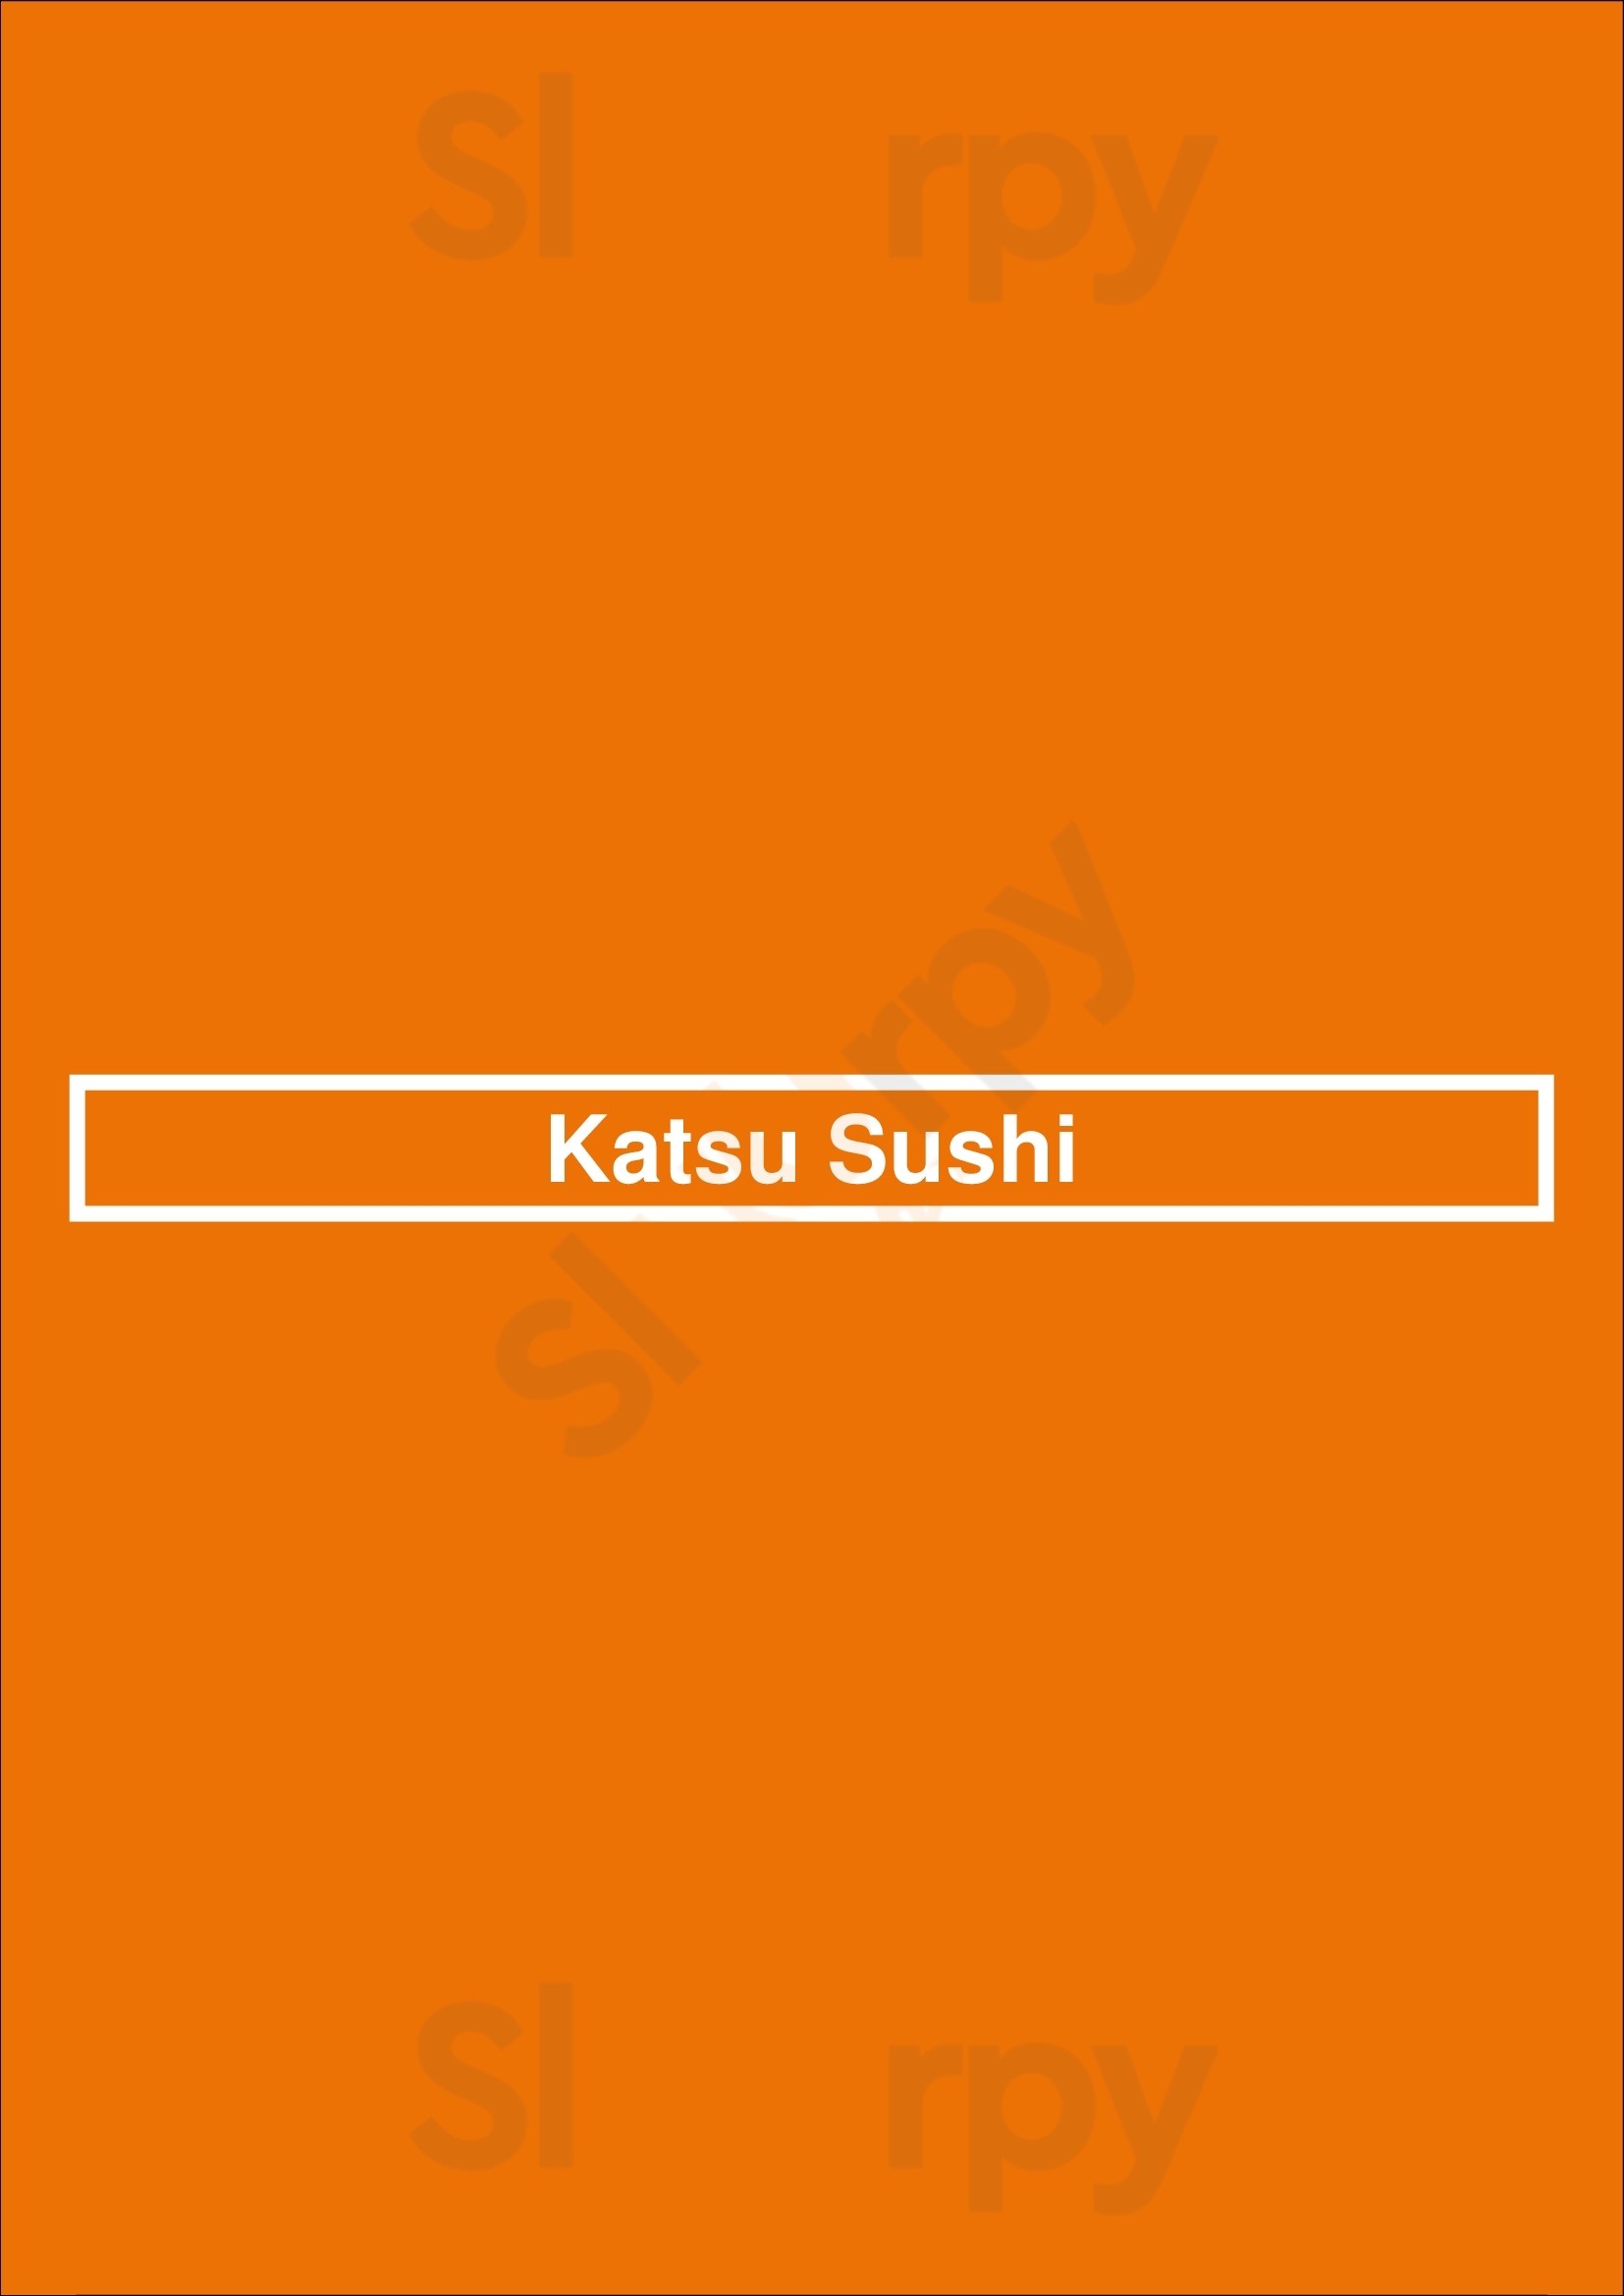 Katsu Sushi North Vancouver Menu - 1